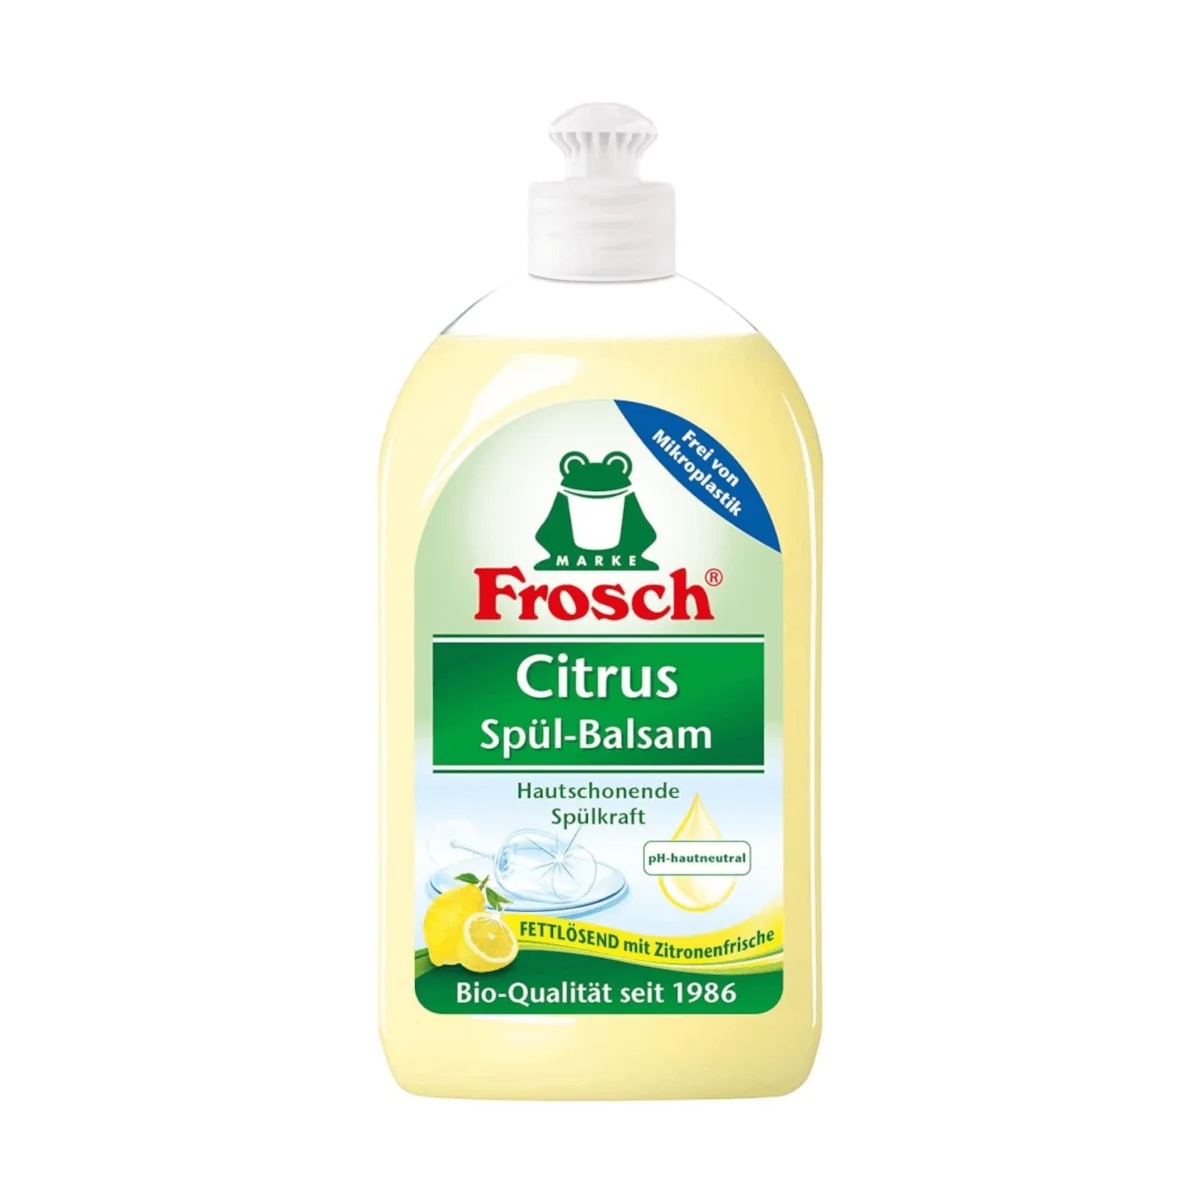 Frosch Citrus Spül-Balsam, 500 ml